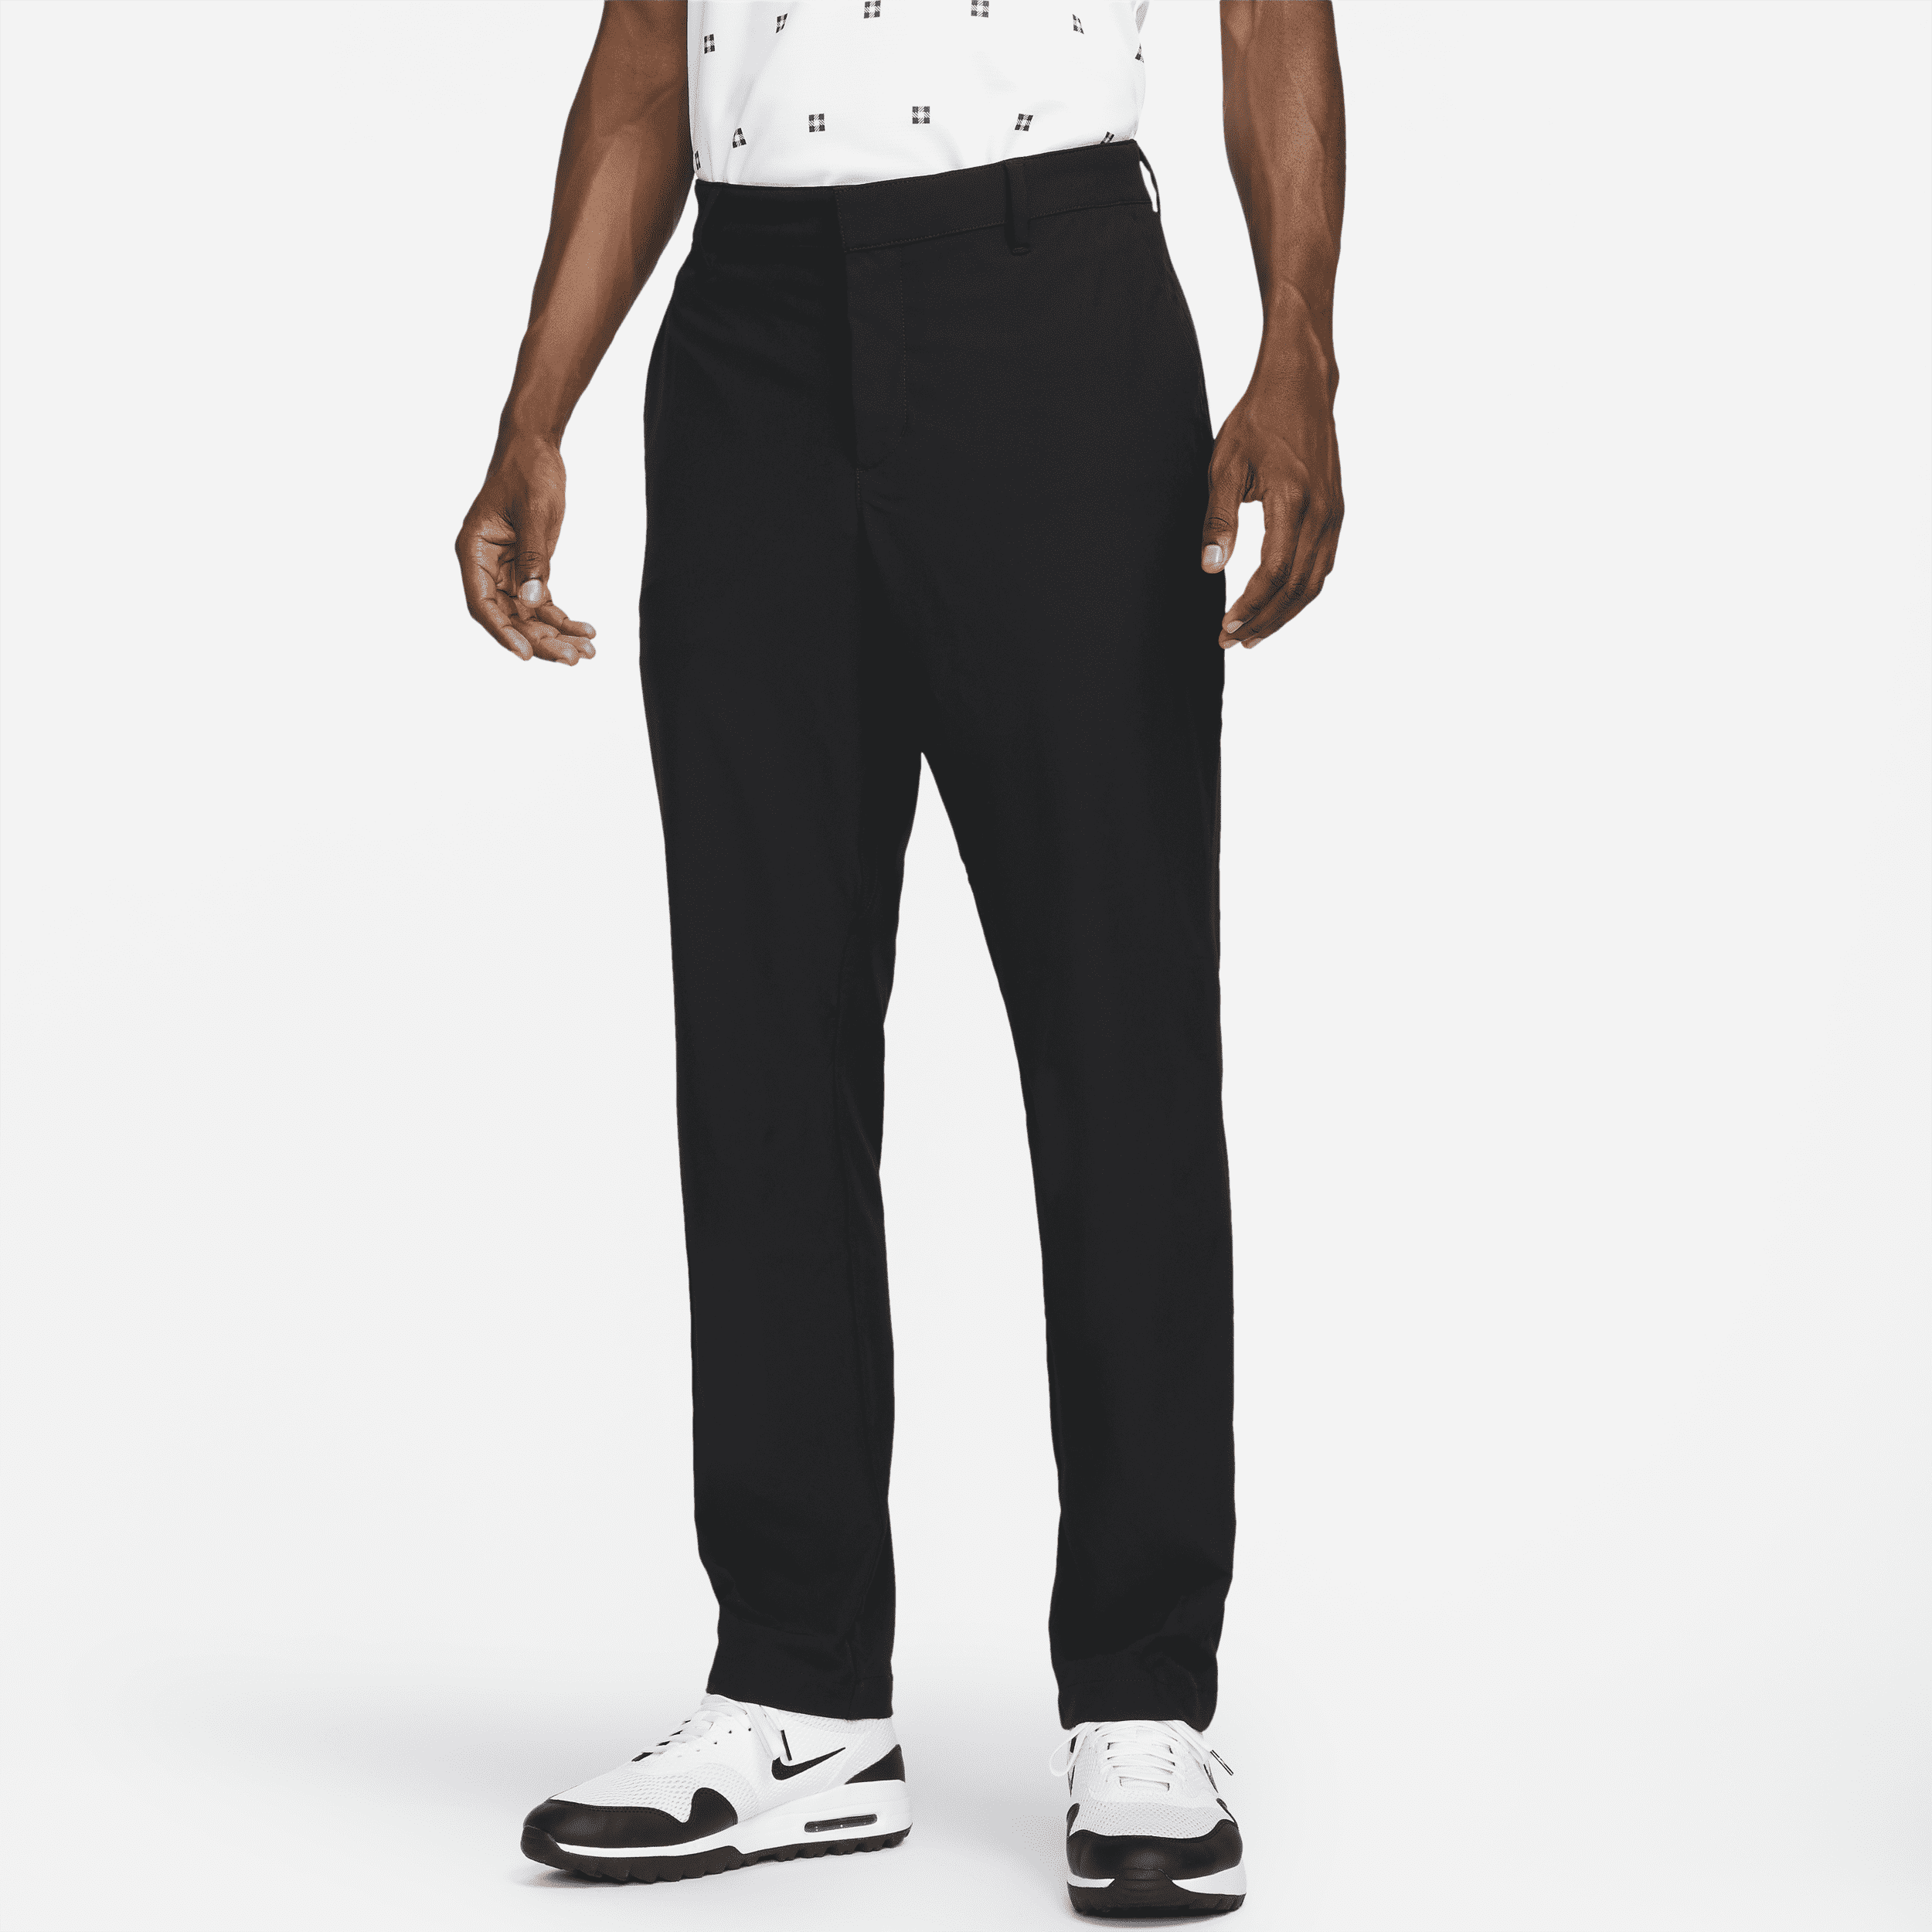 Nike Dri-FIT Vapor-golfbukser med slank pasform til mænd - sort